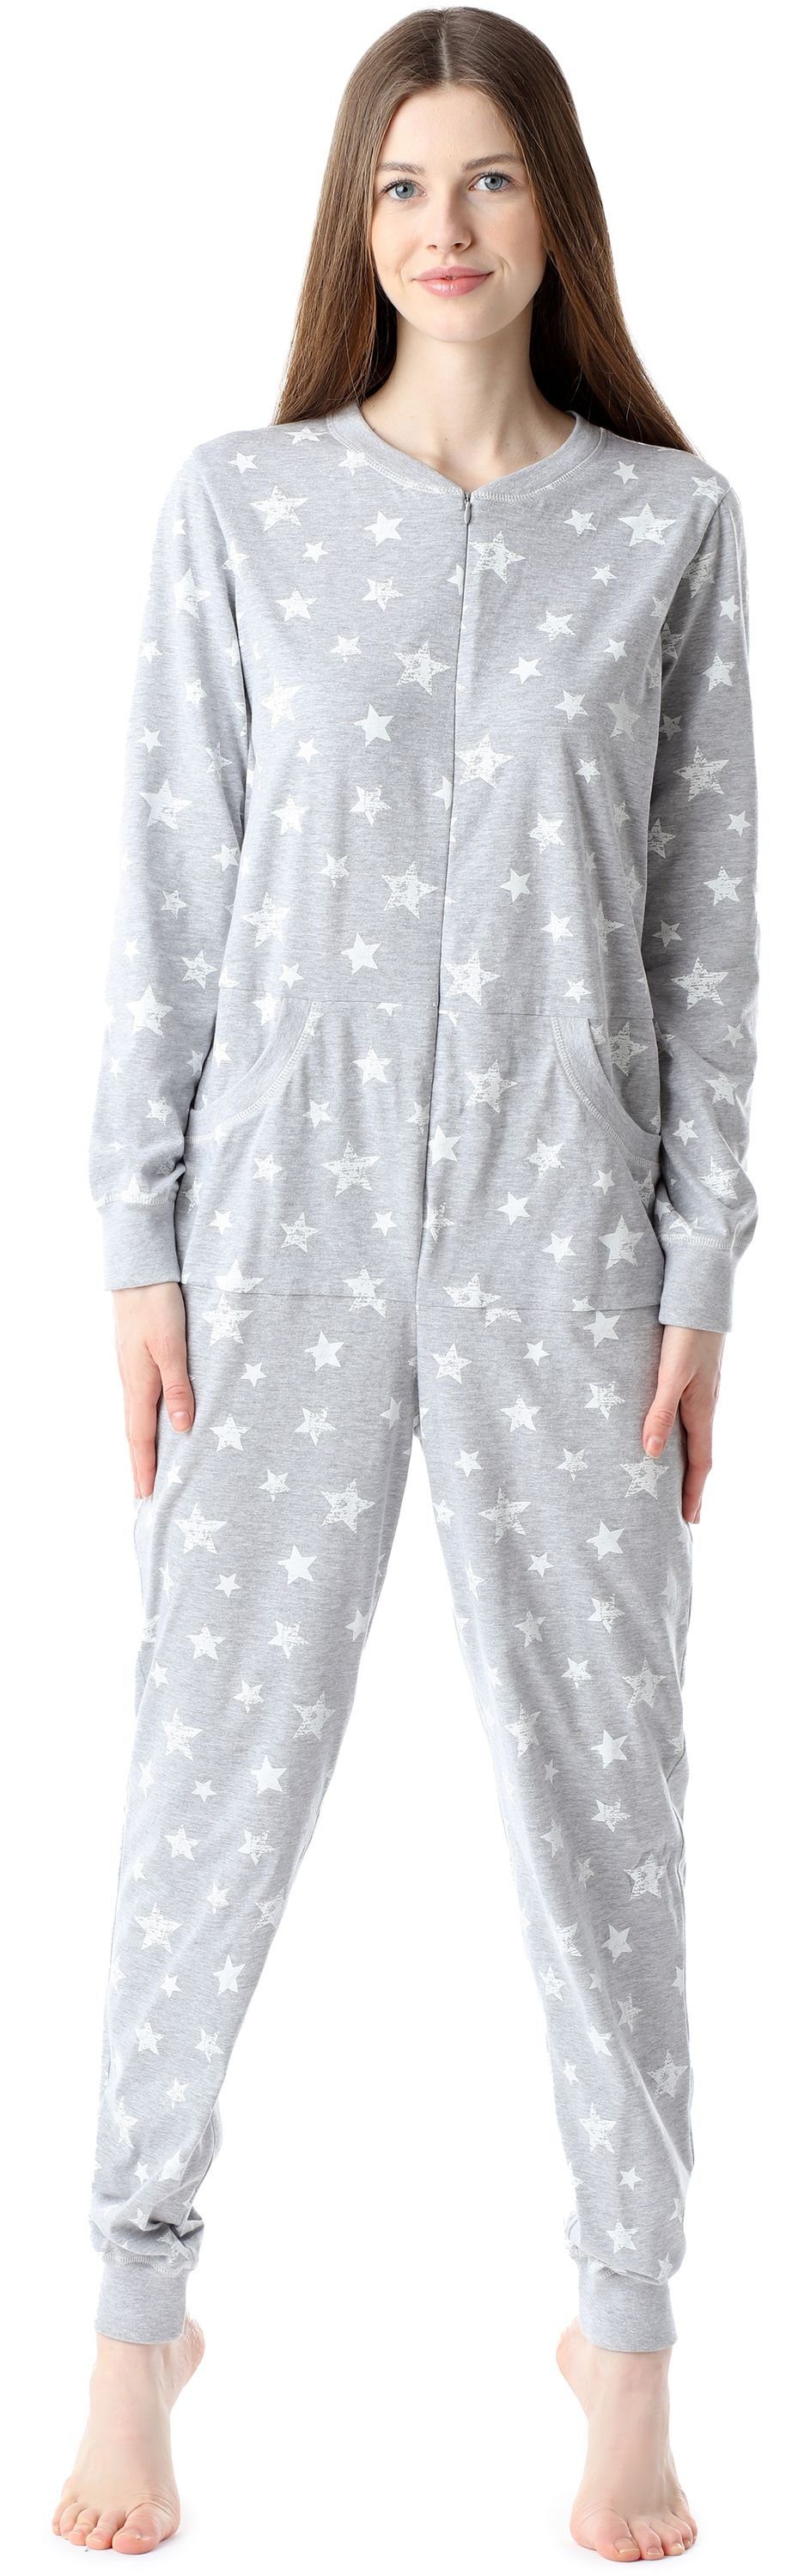 Bellivalini Pyjama Damen Schlafanzug Schlafoverall BLV50-206 Melange/Ecru Sterne